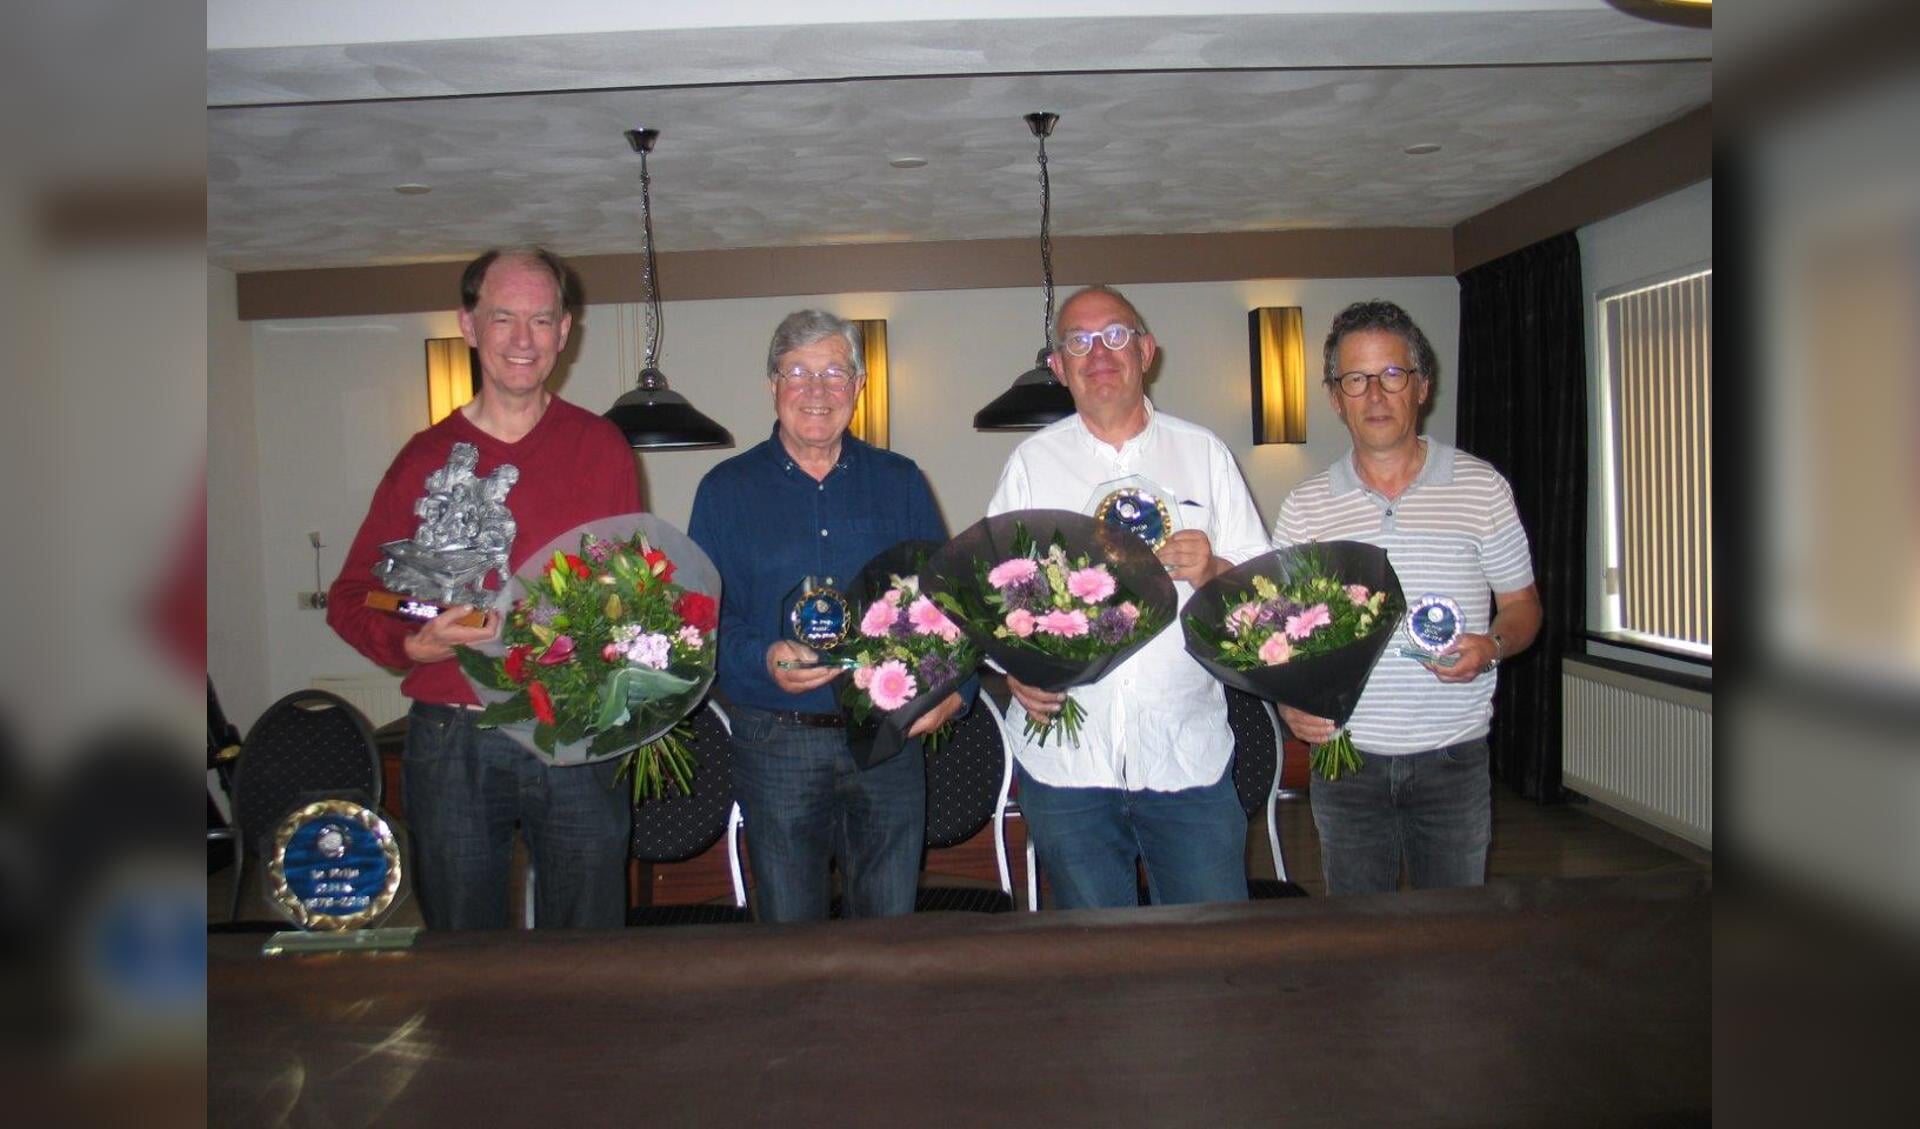 De vier finalisten van het Open Hoevelakens Biljartkampioenschap 2019.